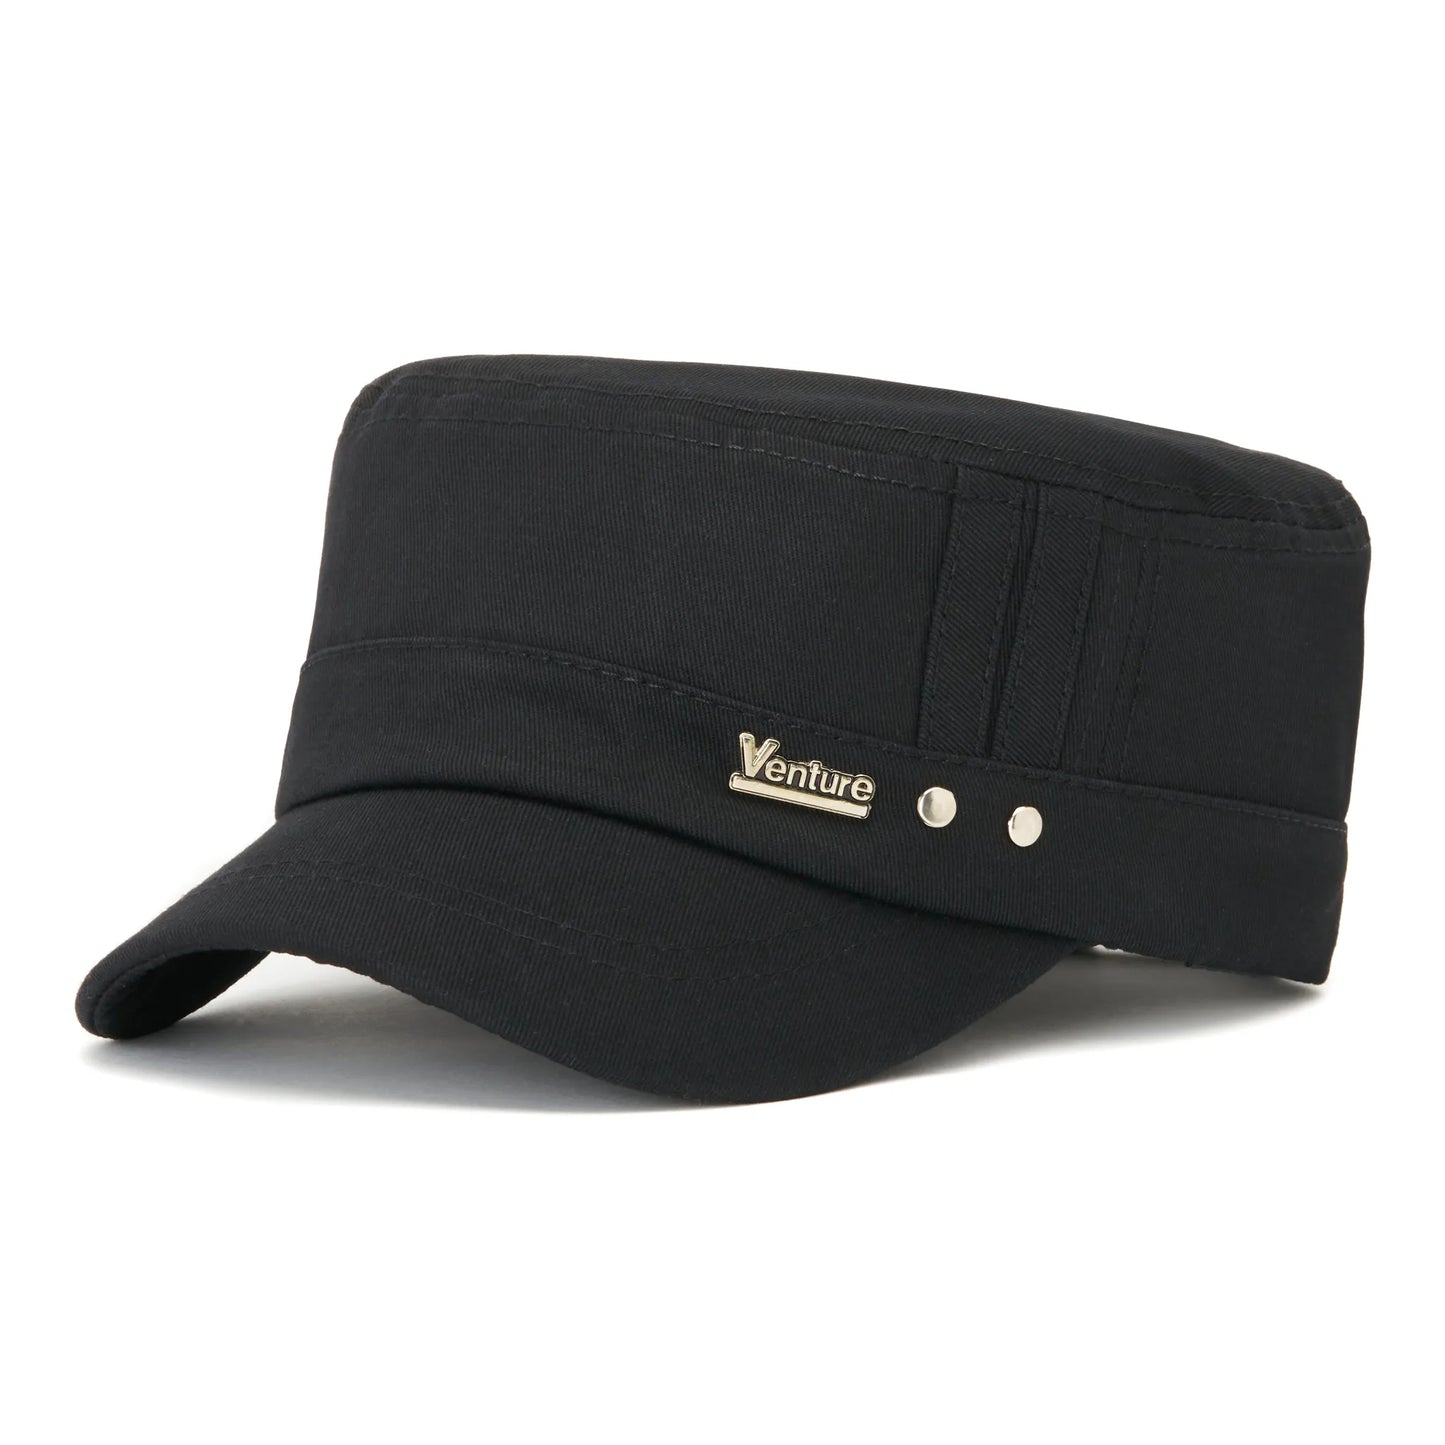 Șapcă bărbați din bumbac, culoarea negru, logo metalic Venture, mărime universală cu cataramă reglabillă.